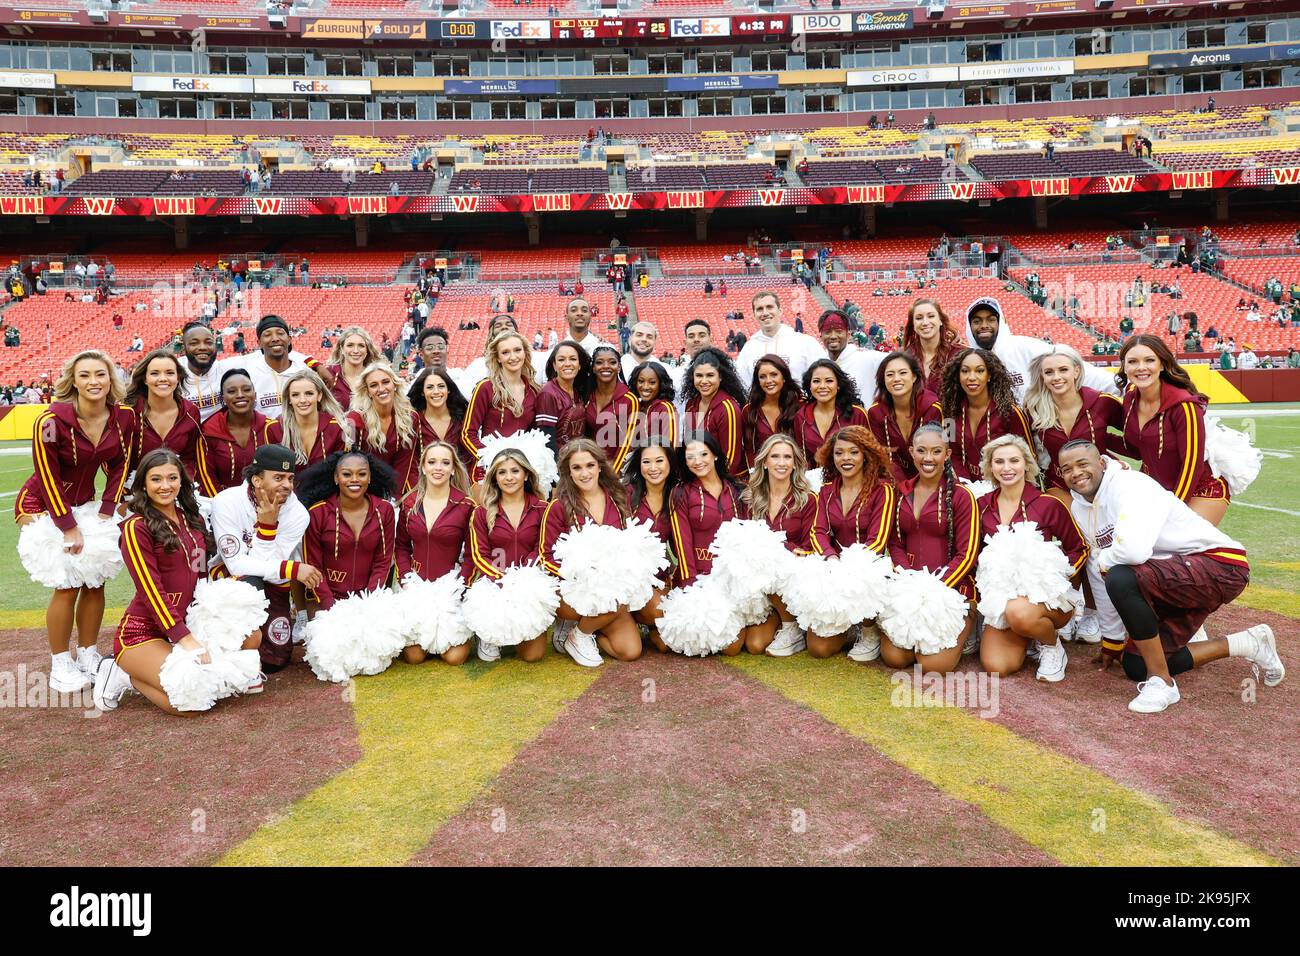 Sonntag, 23. Oktober 2022; Landover, MD, USA; die Cheerleader der Washingtoner Kommandeure posieren für ein Gruppenfoto während eines NFL-Spiels gegen den Green Bay P Stockfoto